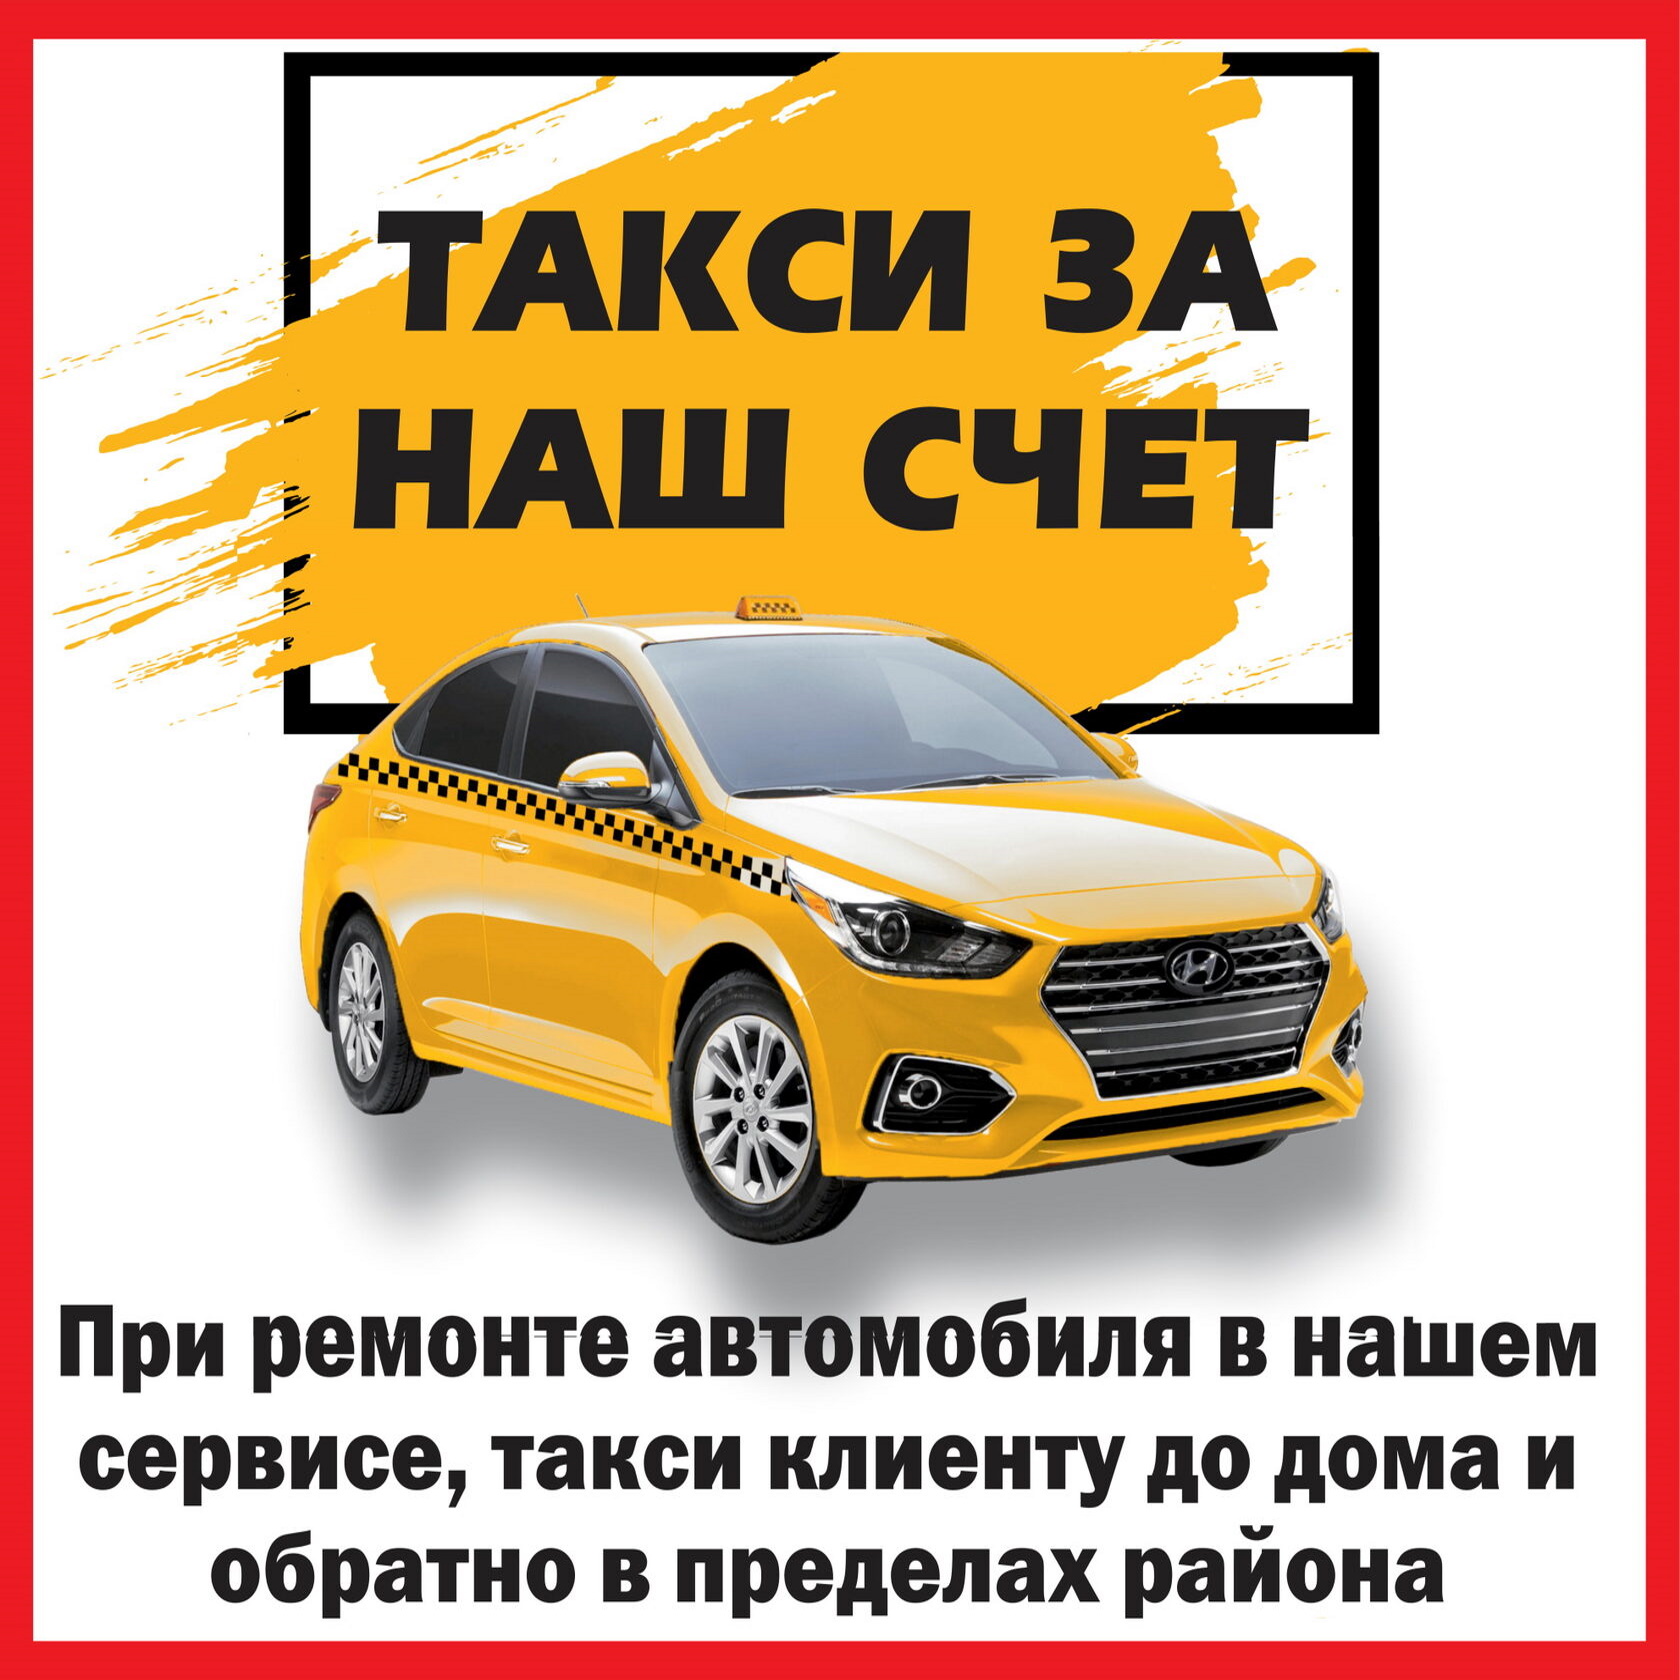 Такси для клиентов автосервиса - БЕСПЛАТНО